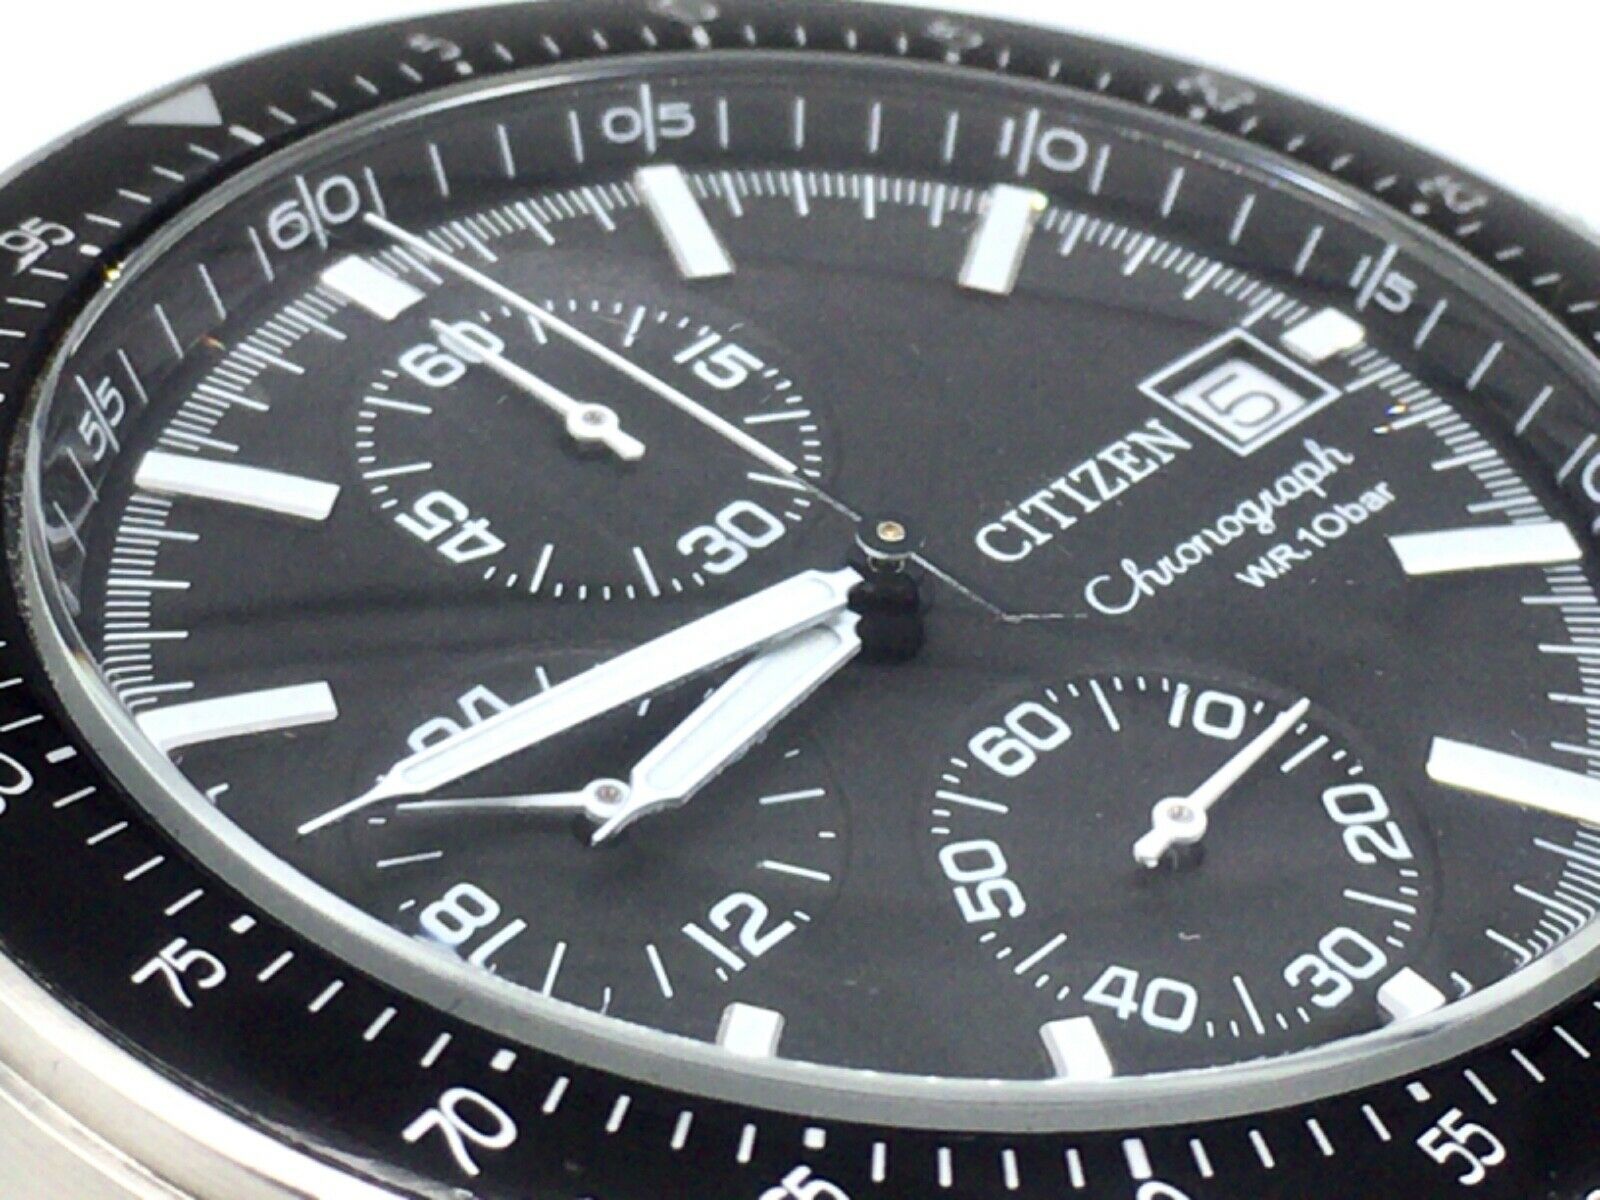 CITIZEN Speed Master Chronograph 0610-K005116 Men's Watch 